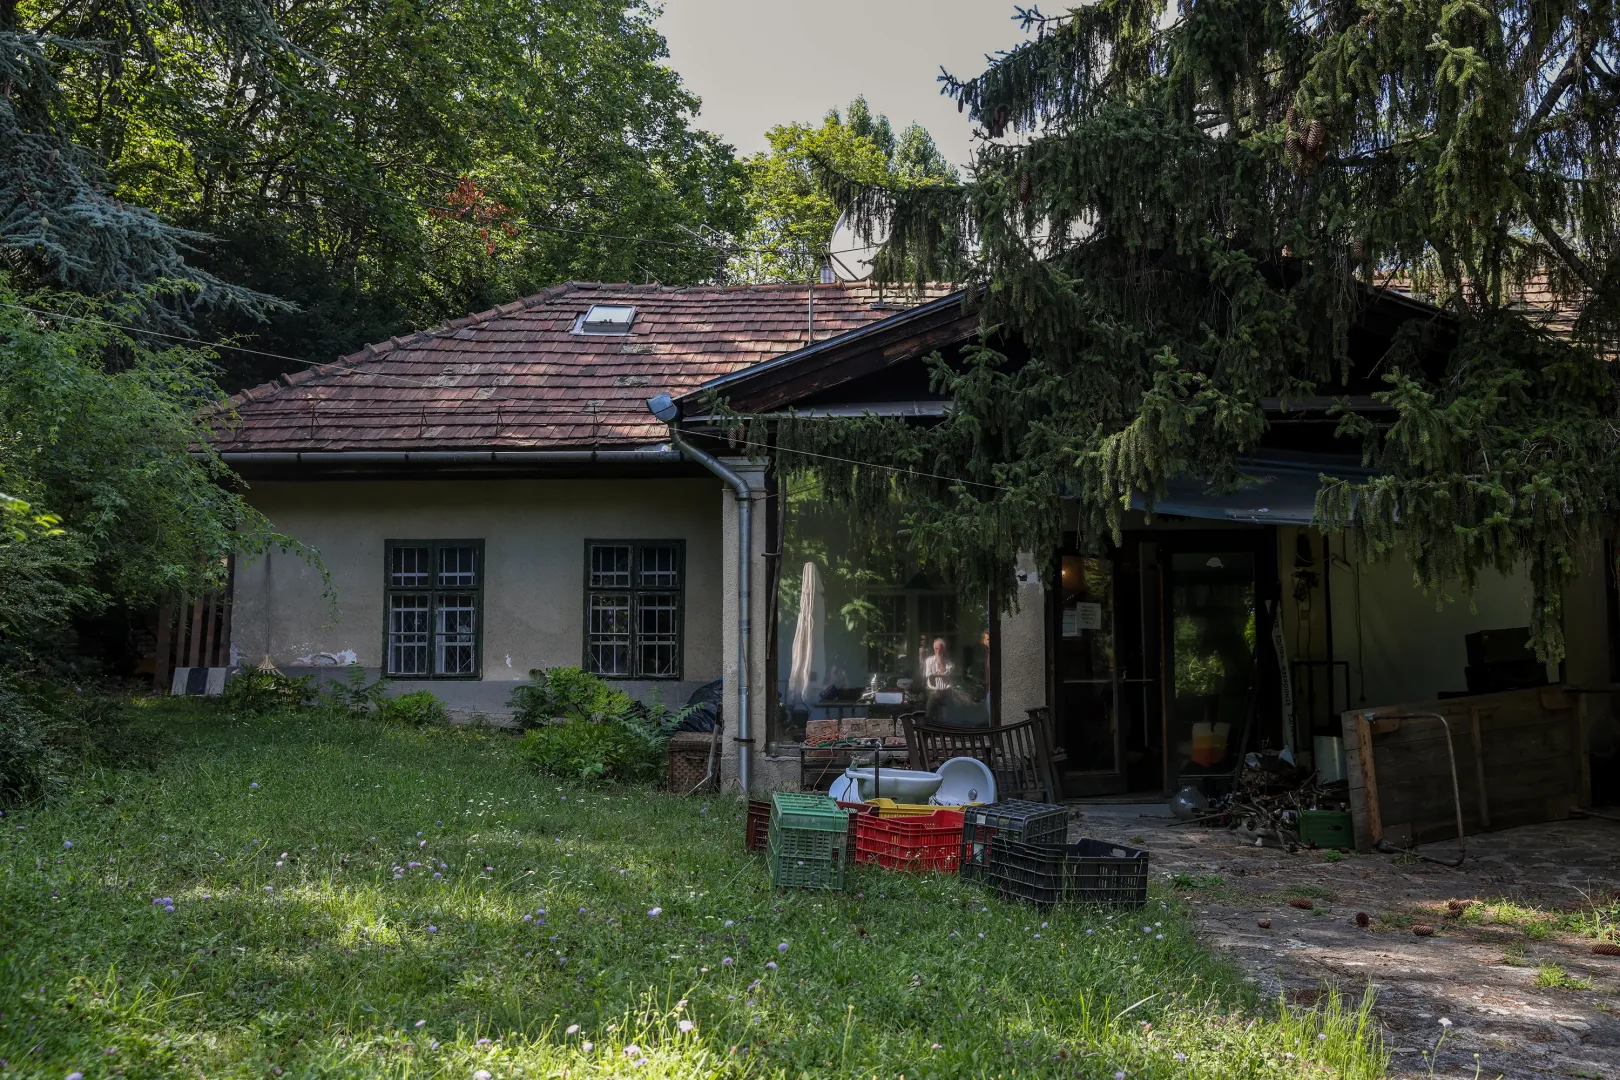 1991 óta élt a házban Hendrey Tibor és családja – Fotó: Melegh Noémi Napsugár / Telex